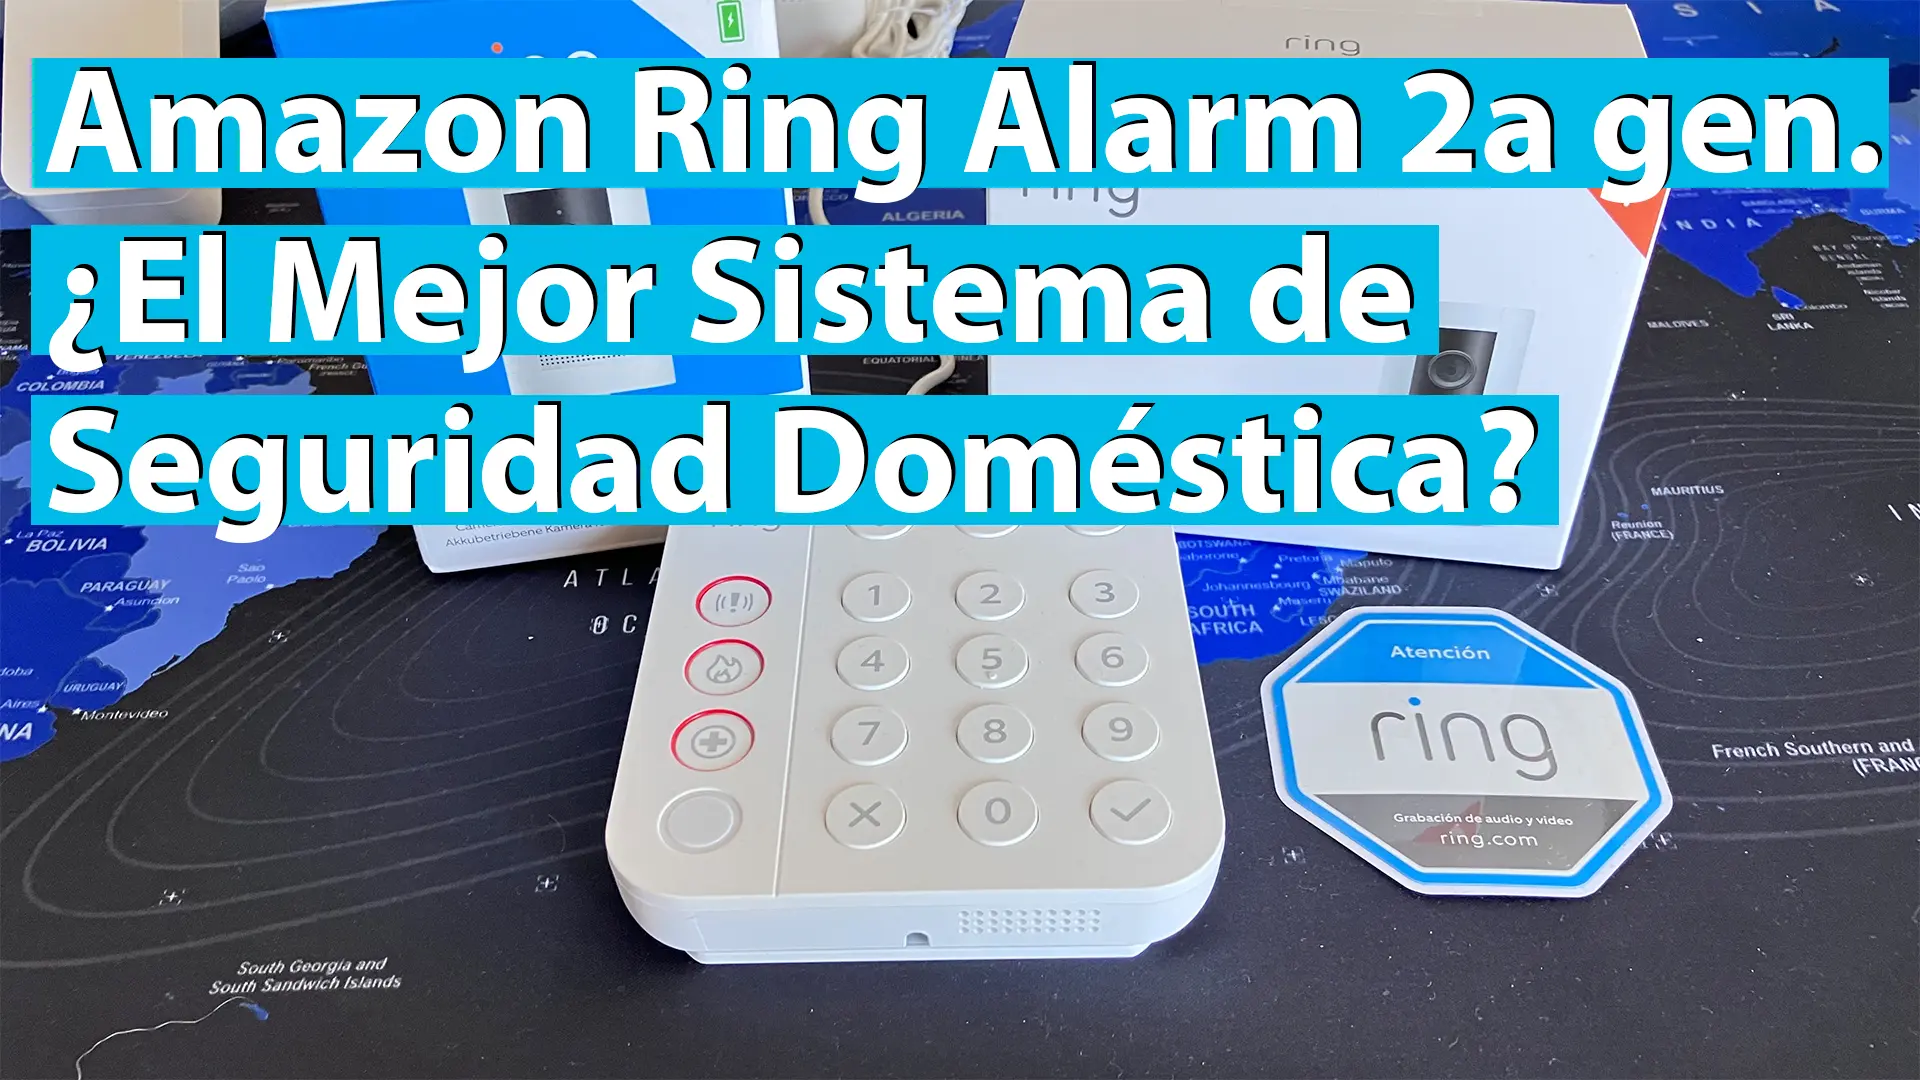 Amazon Ring Alarm: ¿El Mejor Sistema de Seguridad Doméstica?